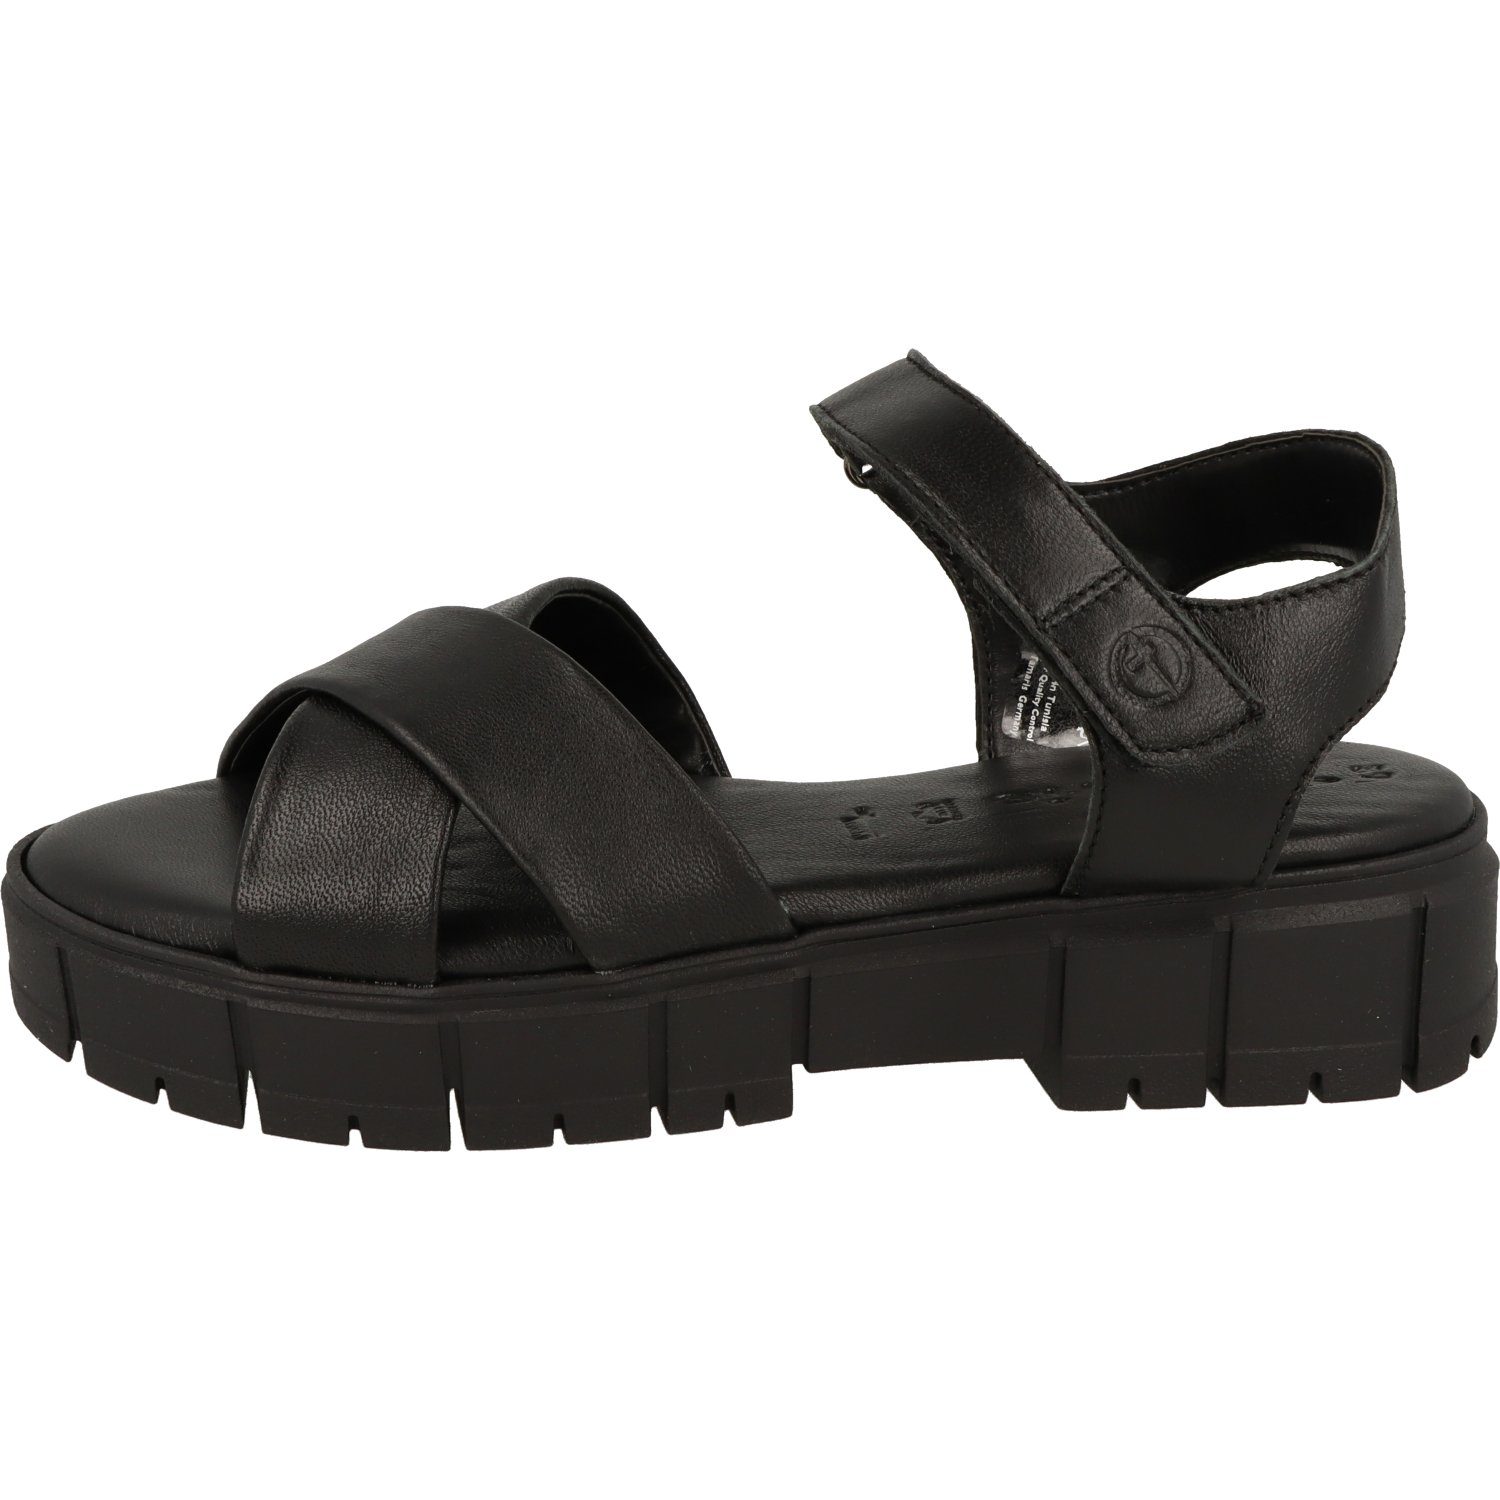 Plateausandale Sandalette Schuhe Damen 1-28242-20 Tamaris Klett Komfort Black Leder Leather